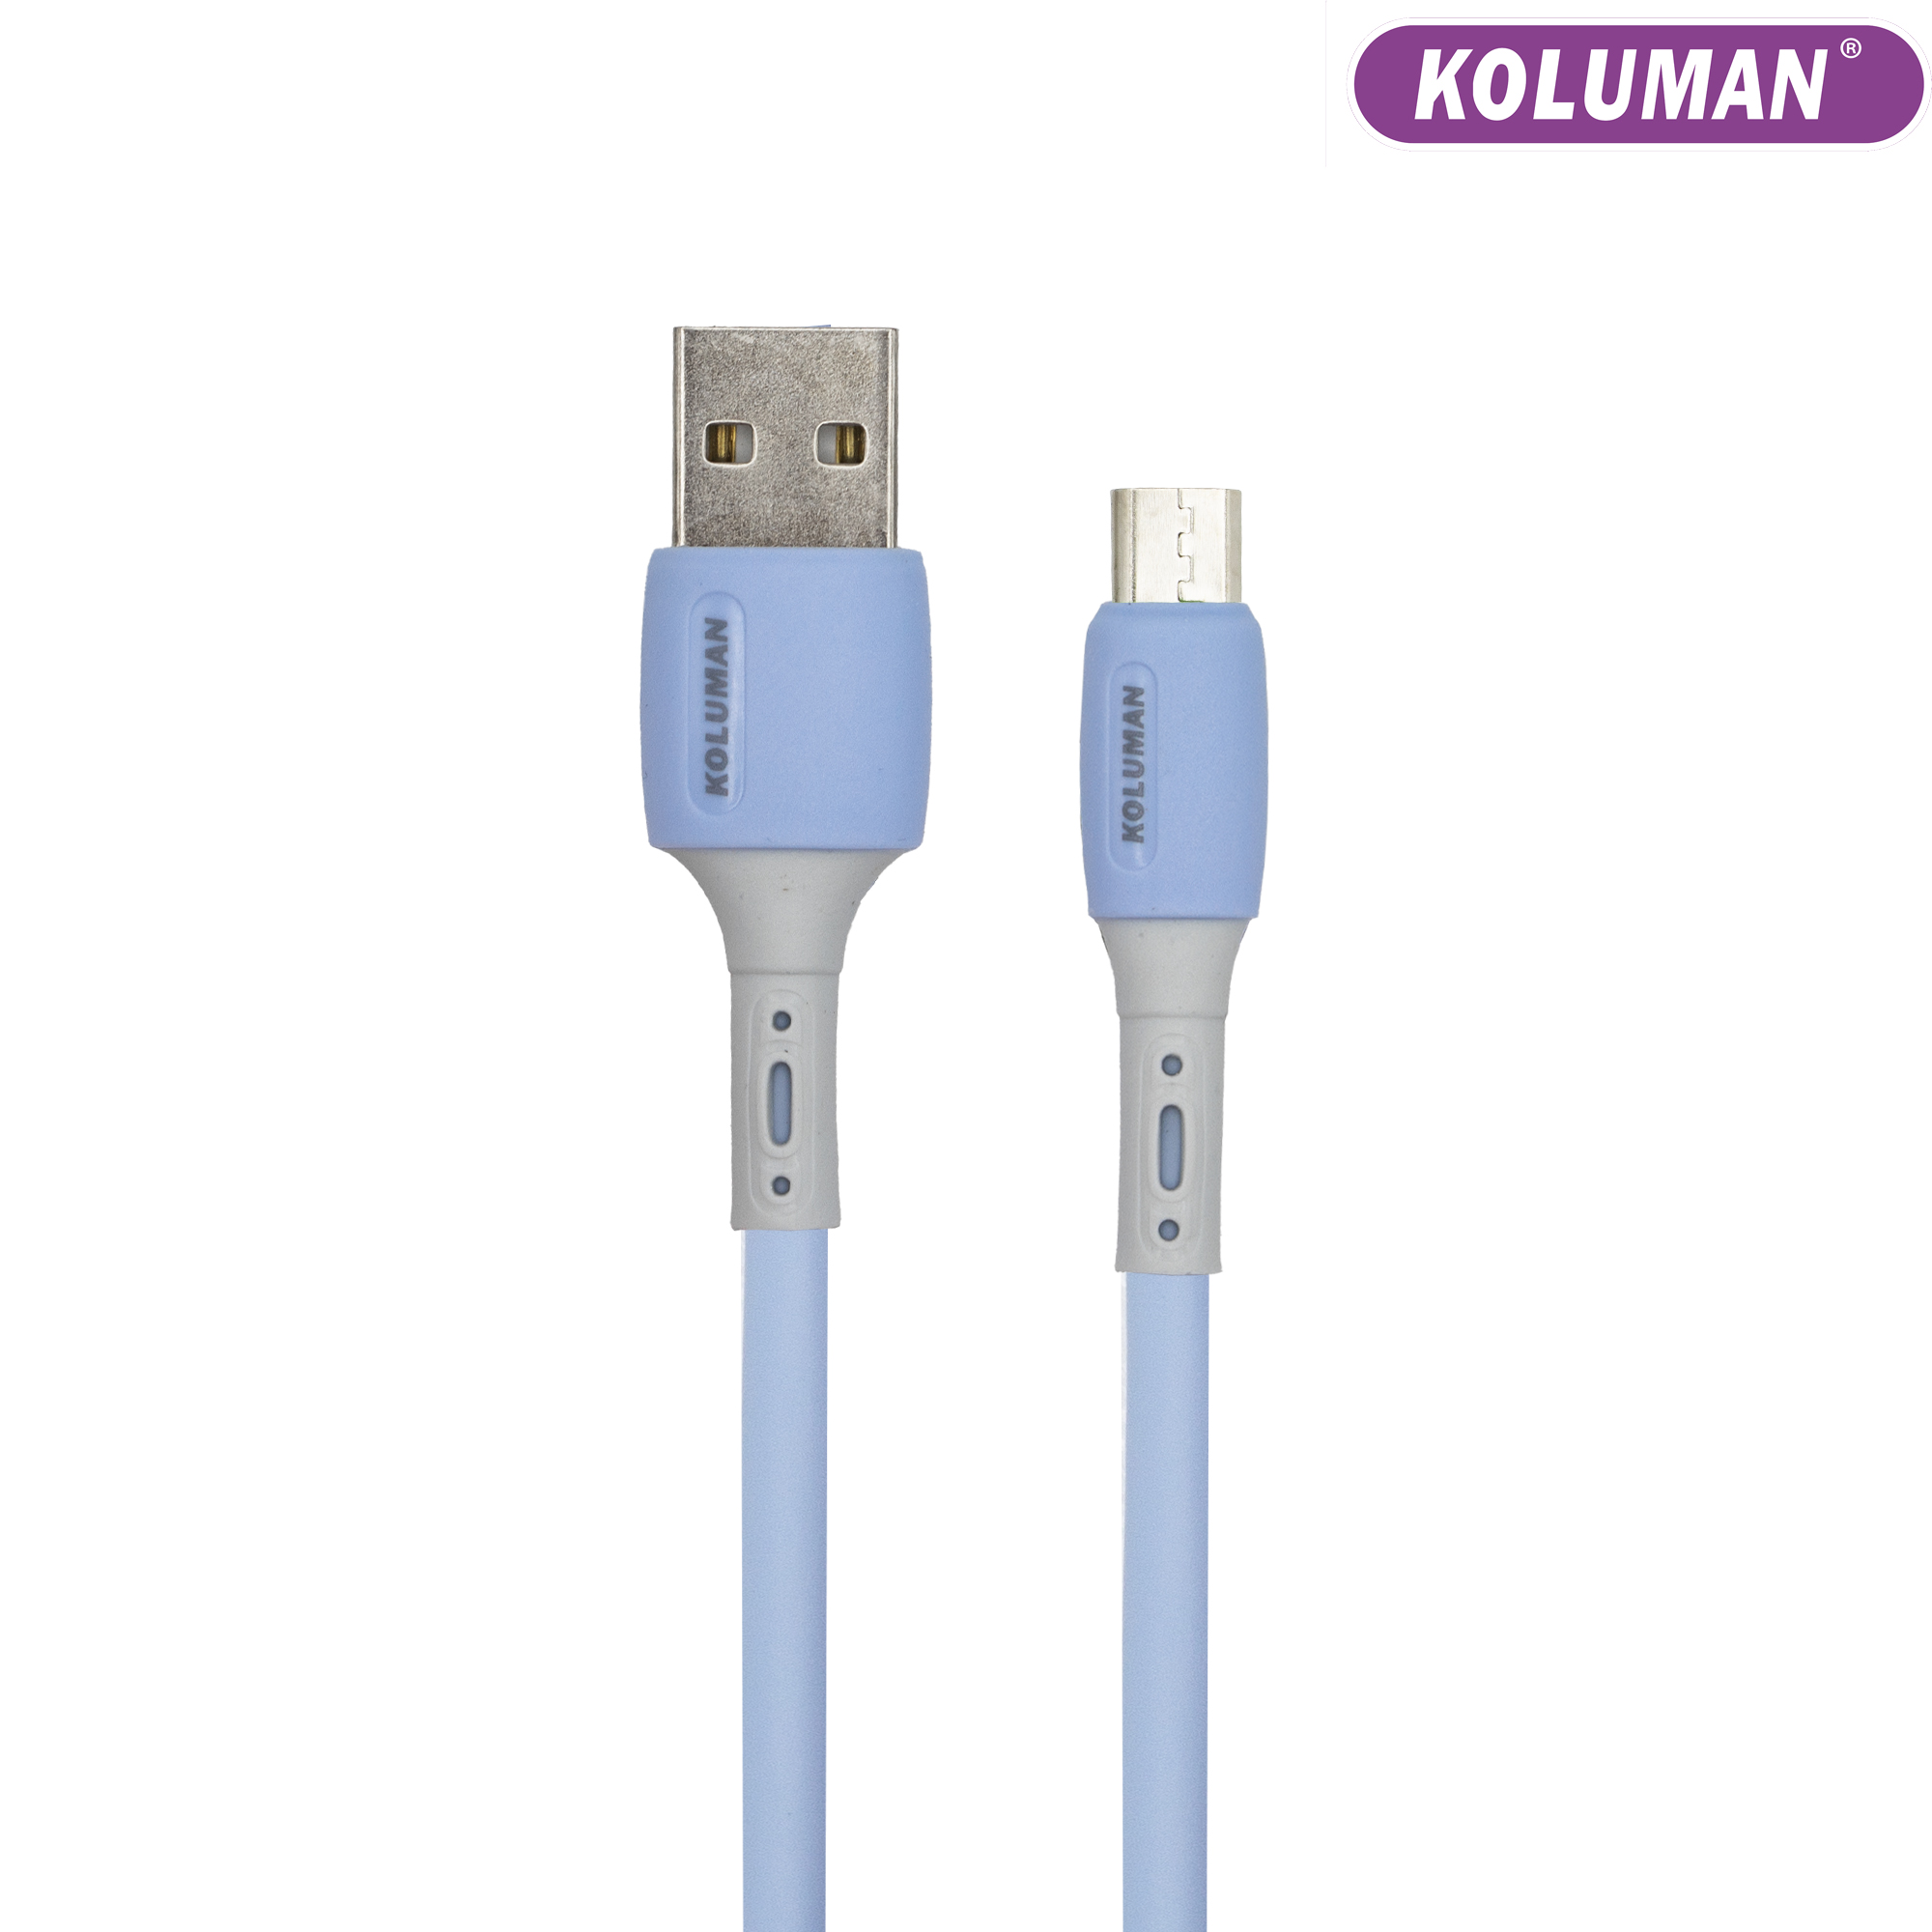 کابل تبدیل USB به MICRO USB کلومن مدل DK – 62 طول 1 متر